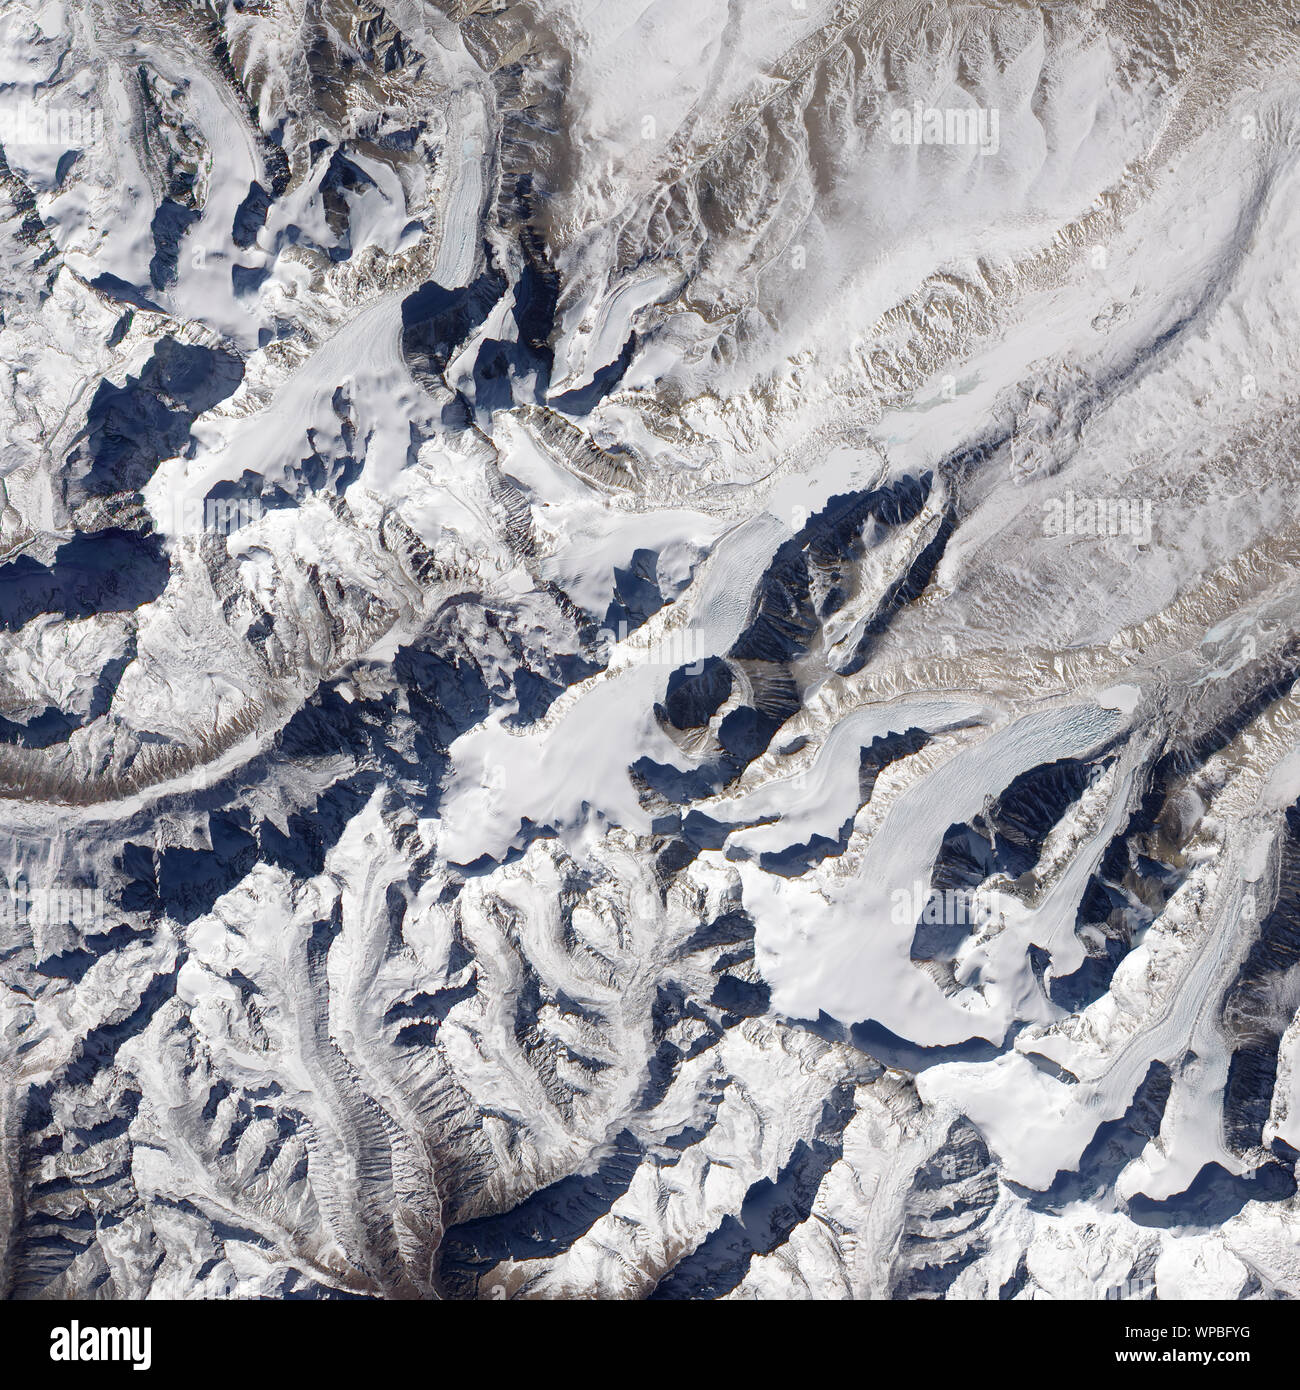 Les glaciers de l'Himalaya, les montagnes de l'Himalaya, le sud de la Chine, 25 décembre 2009, par la NASA/Jesse Allen/DPA Banque D'Images